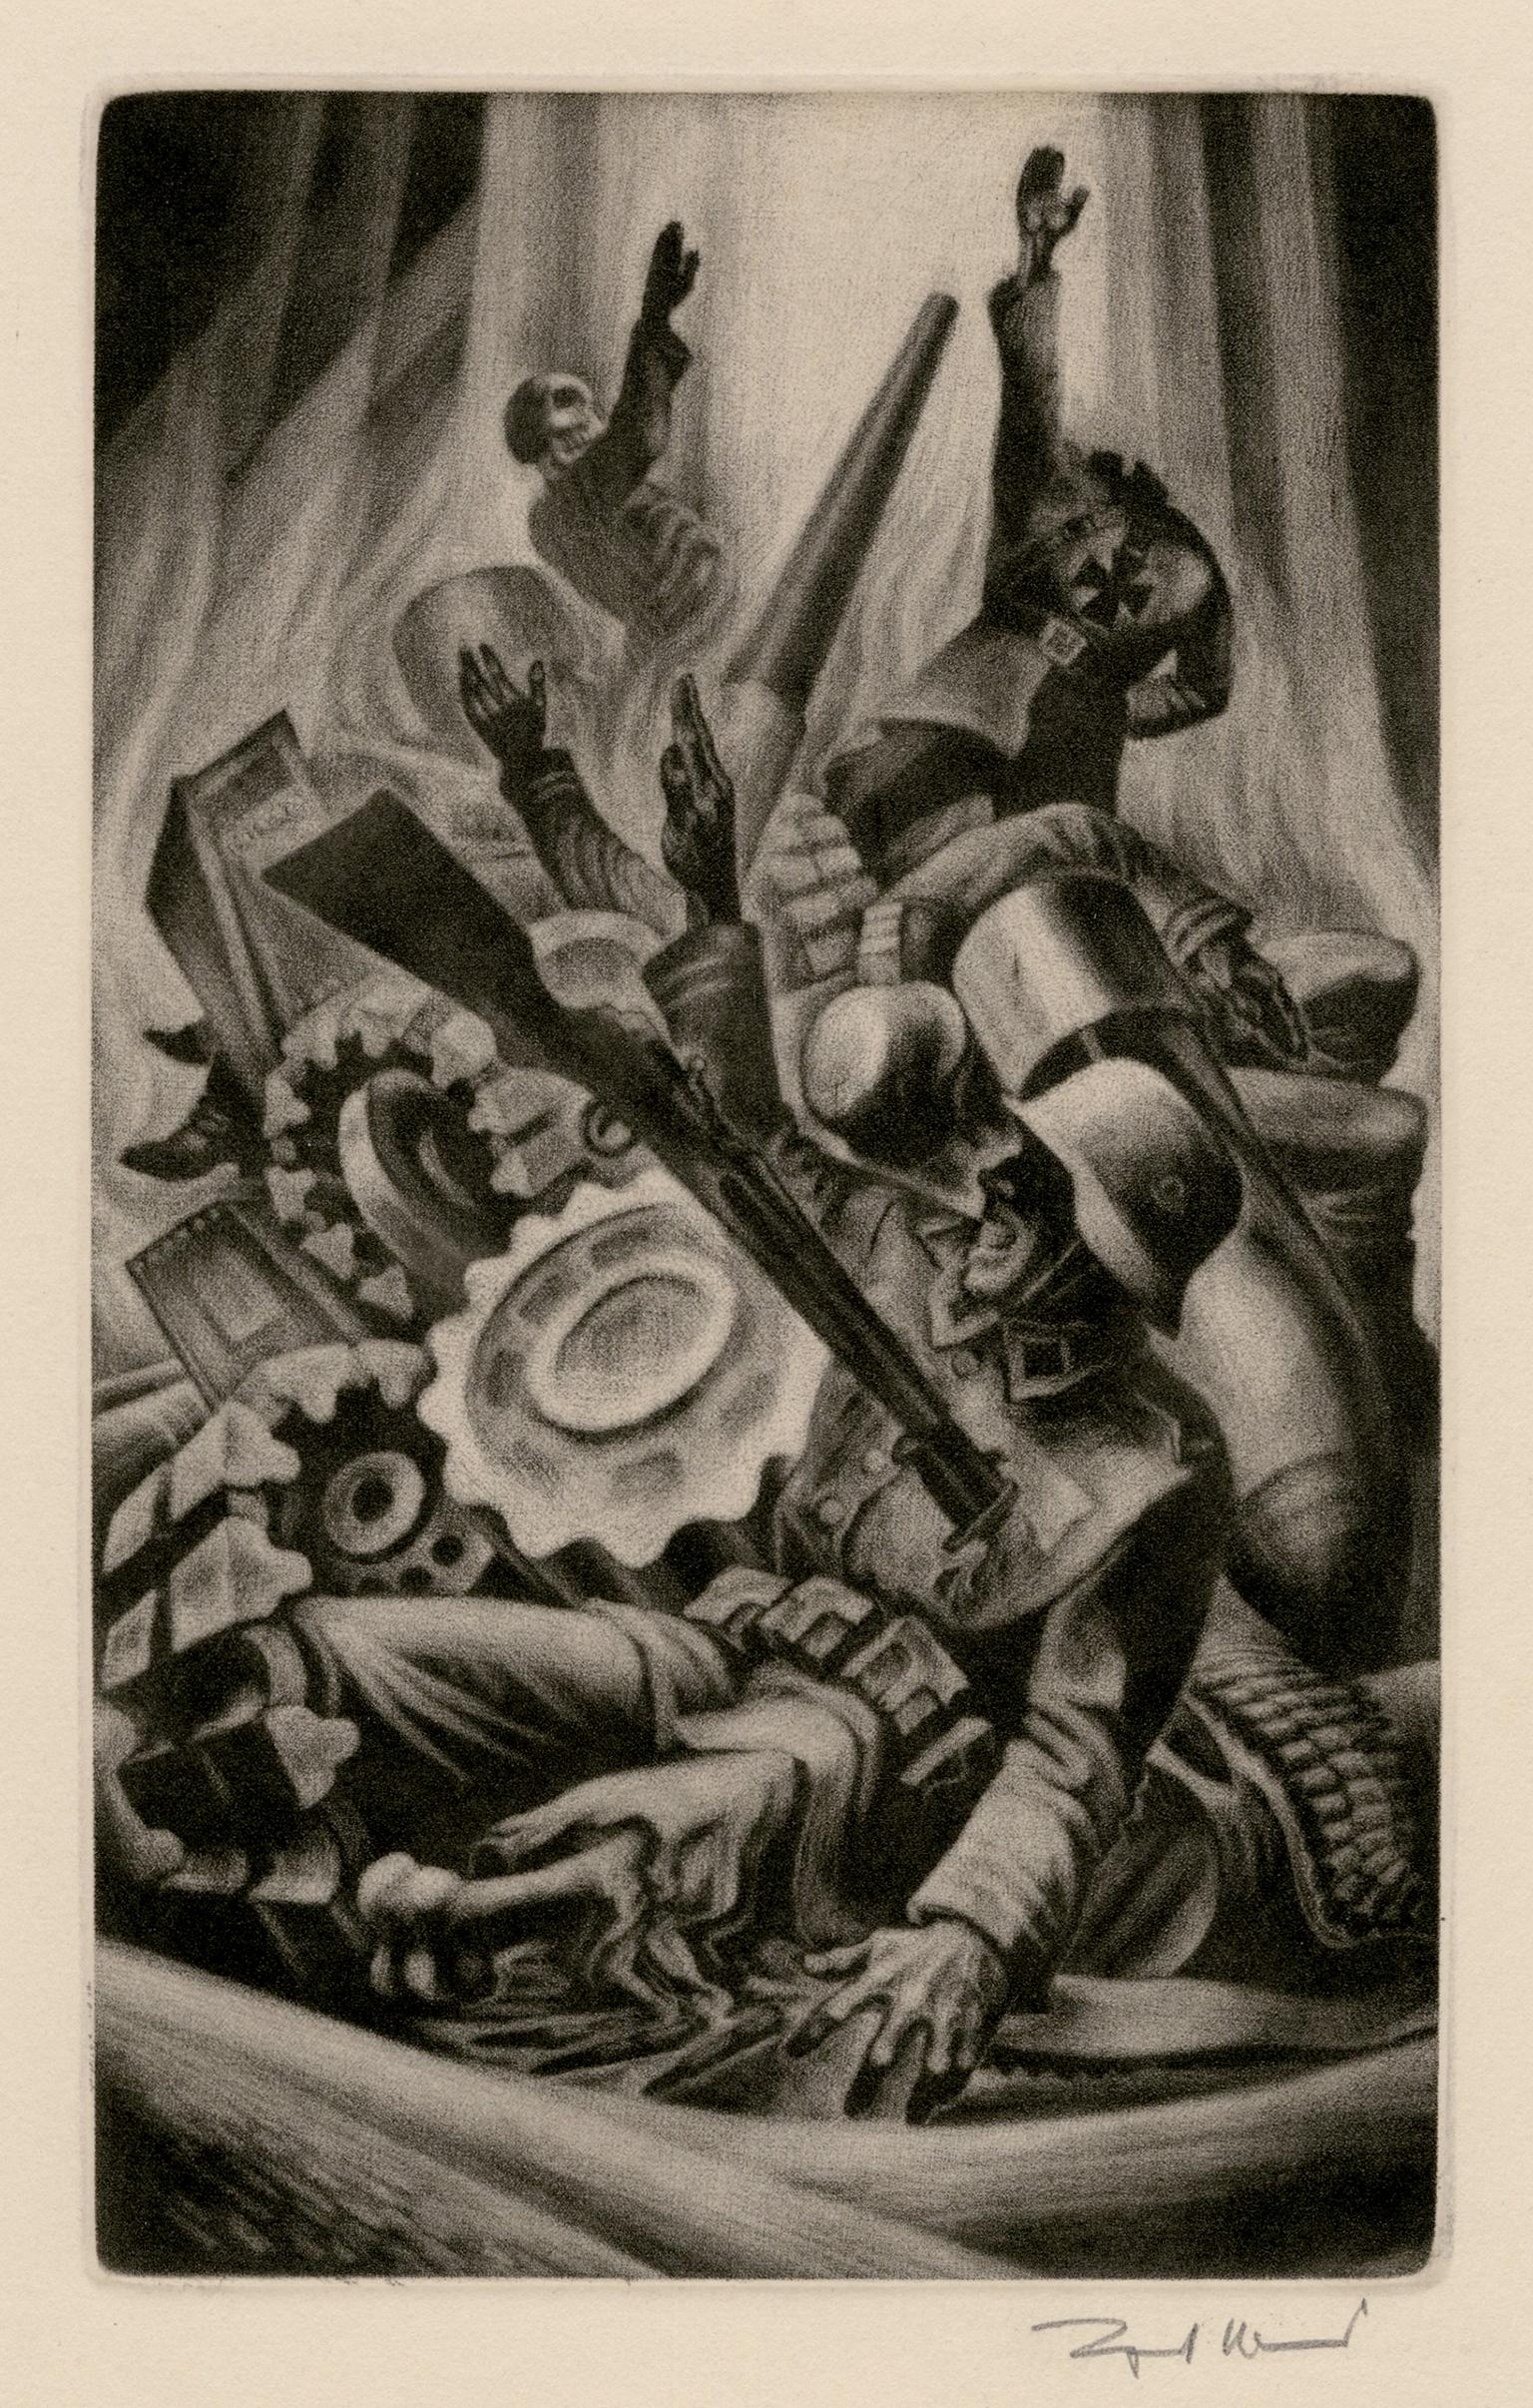 Chiens de guerre" de "L'éloge de la folie" - Modernisme graphique des années 1940